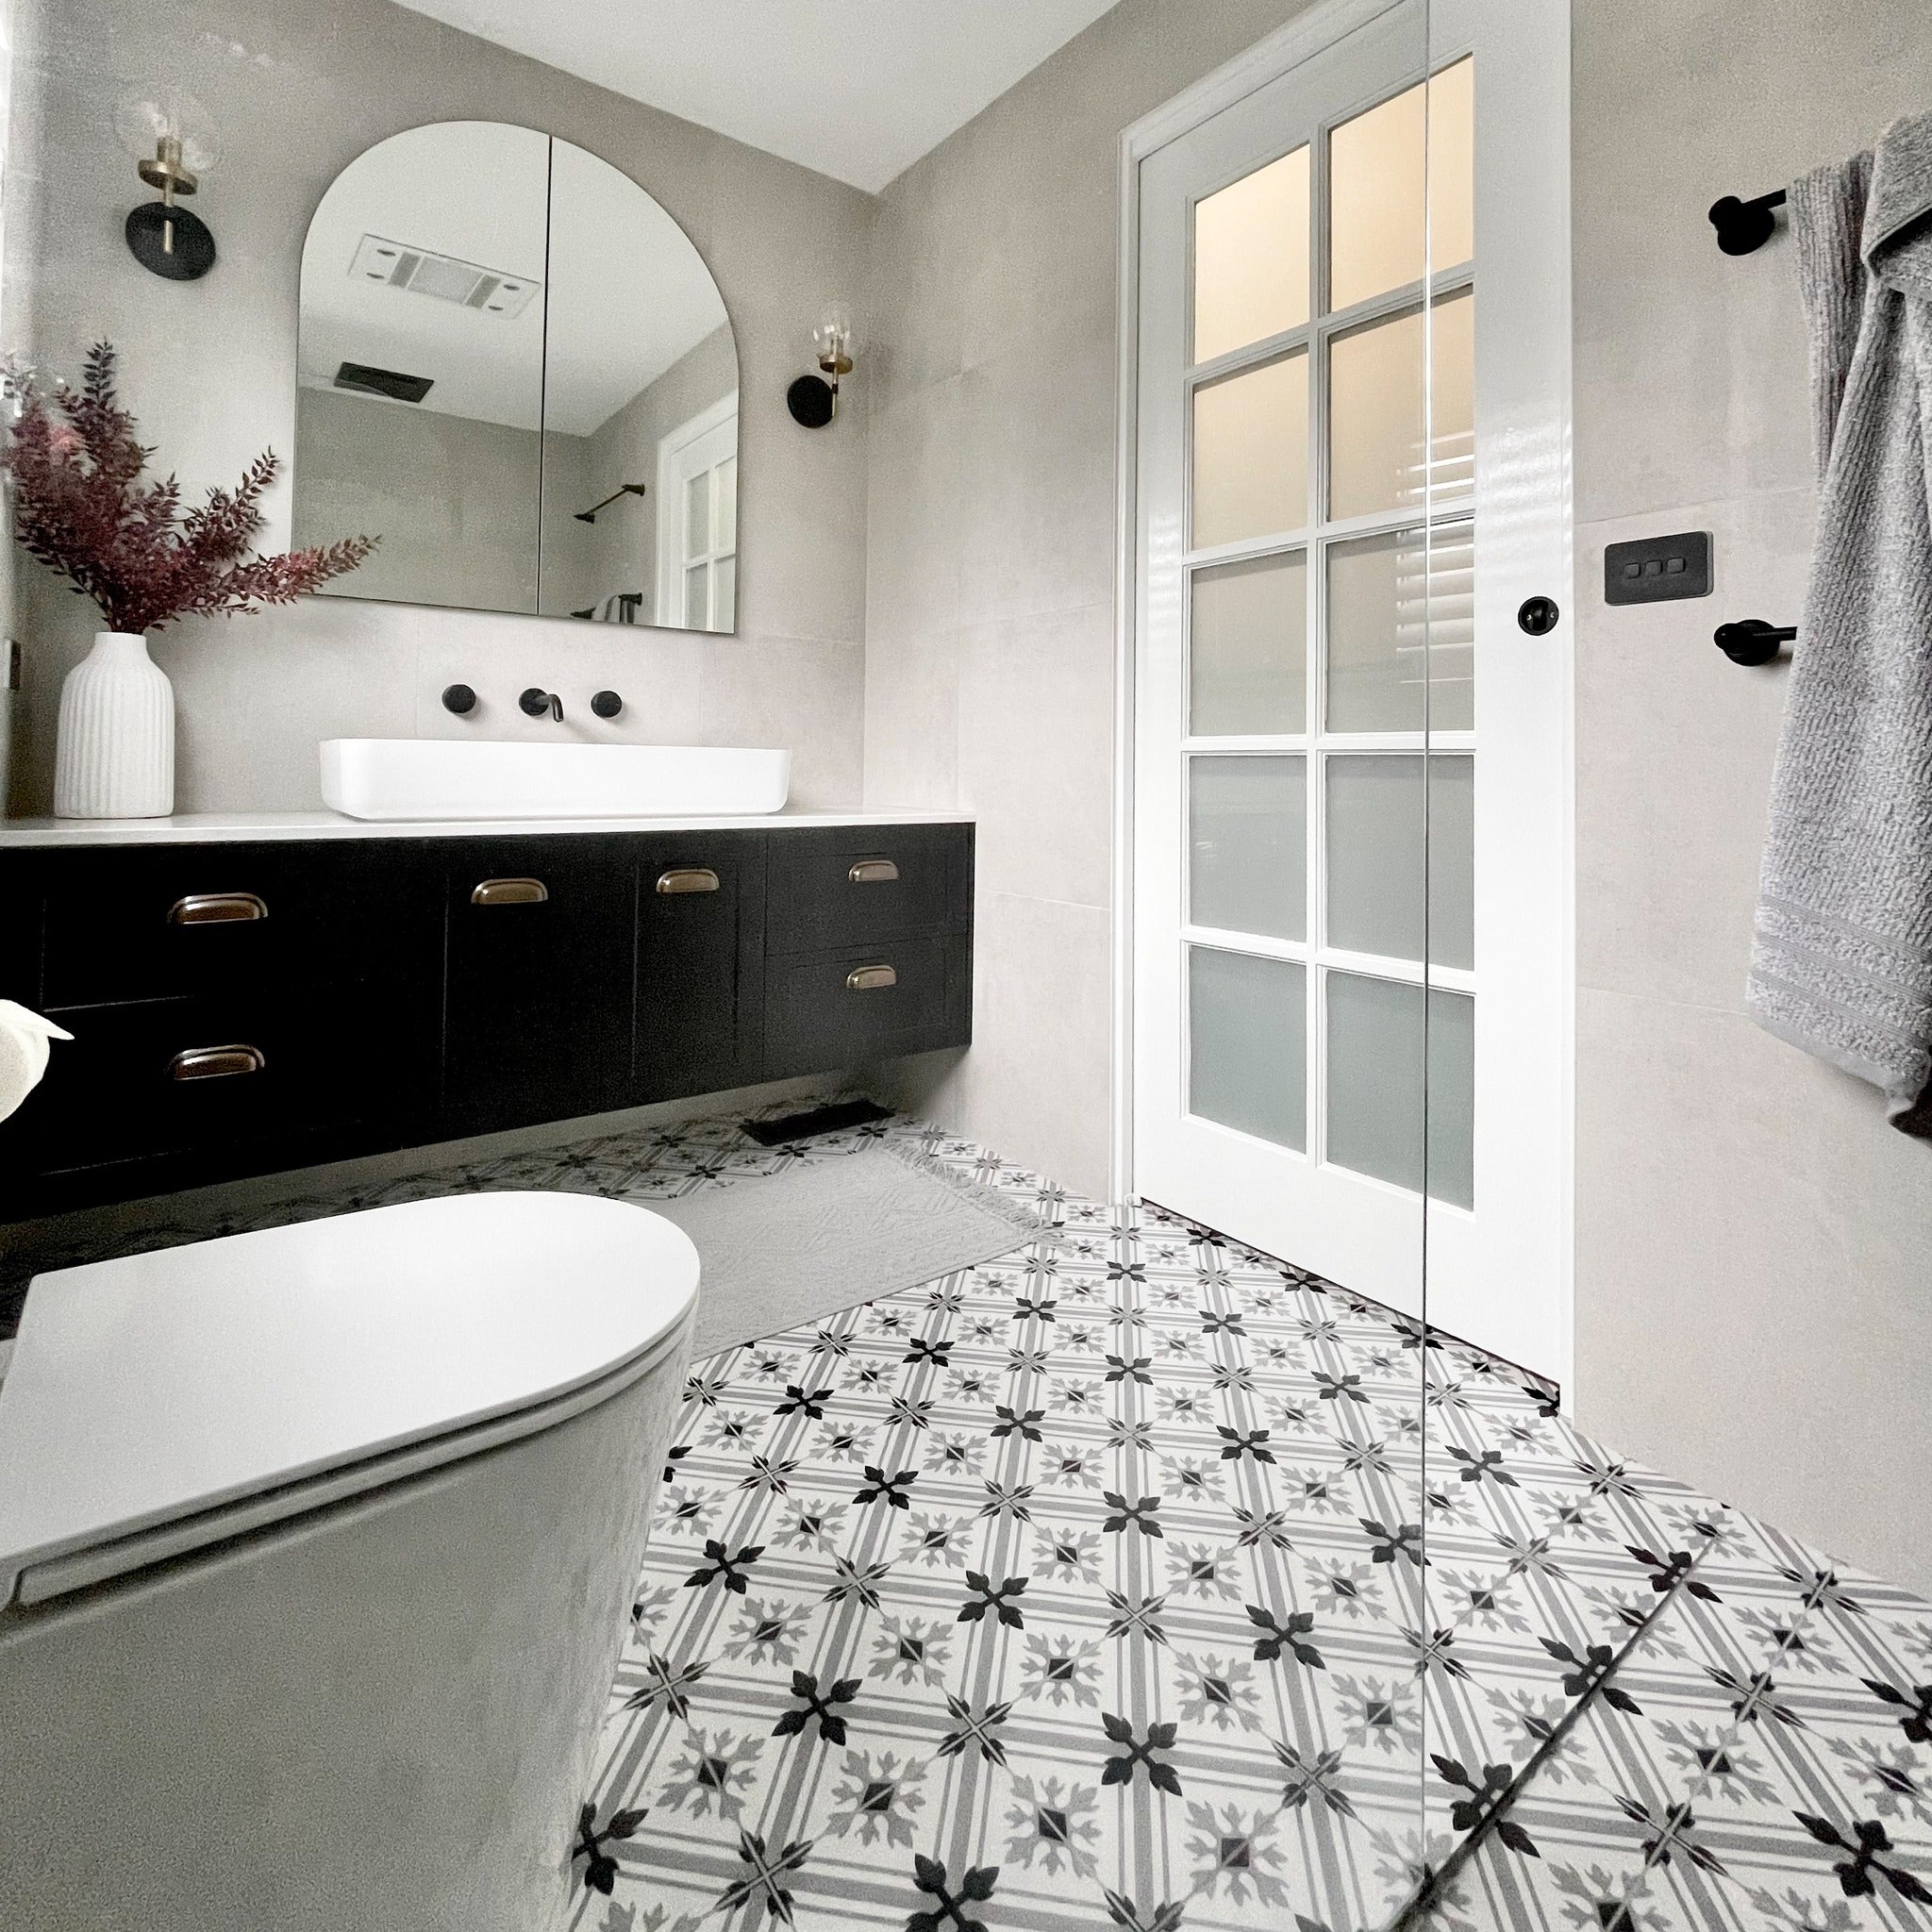 Pattern Tilebathroom tile idea Modern Black & White 2625 200x200 Matt